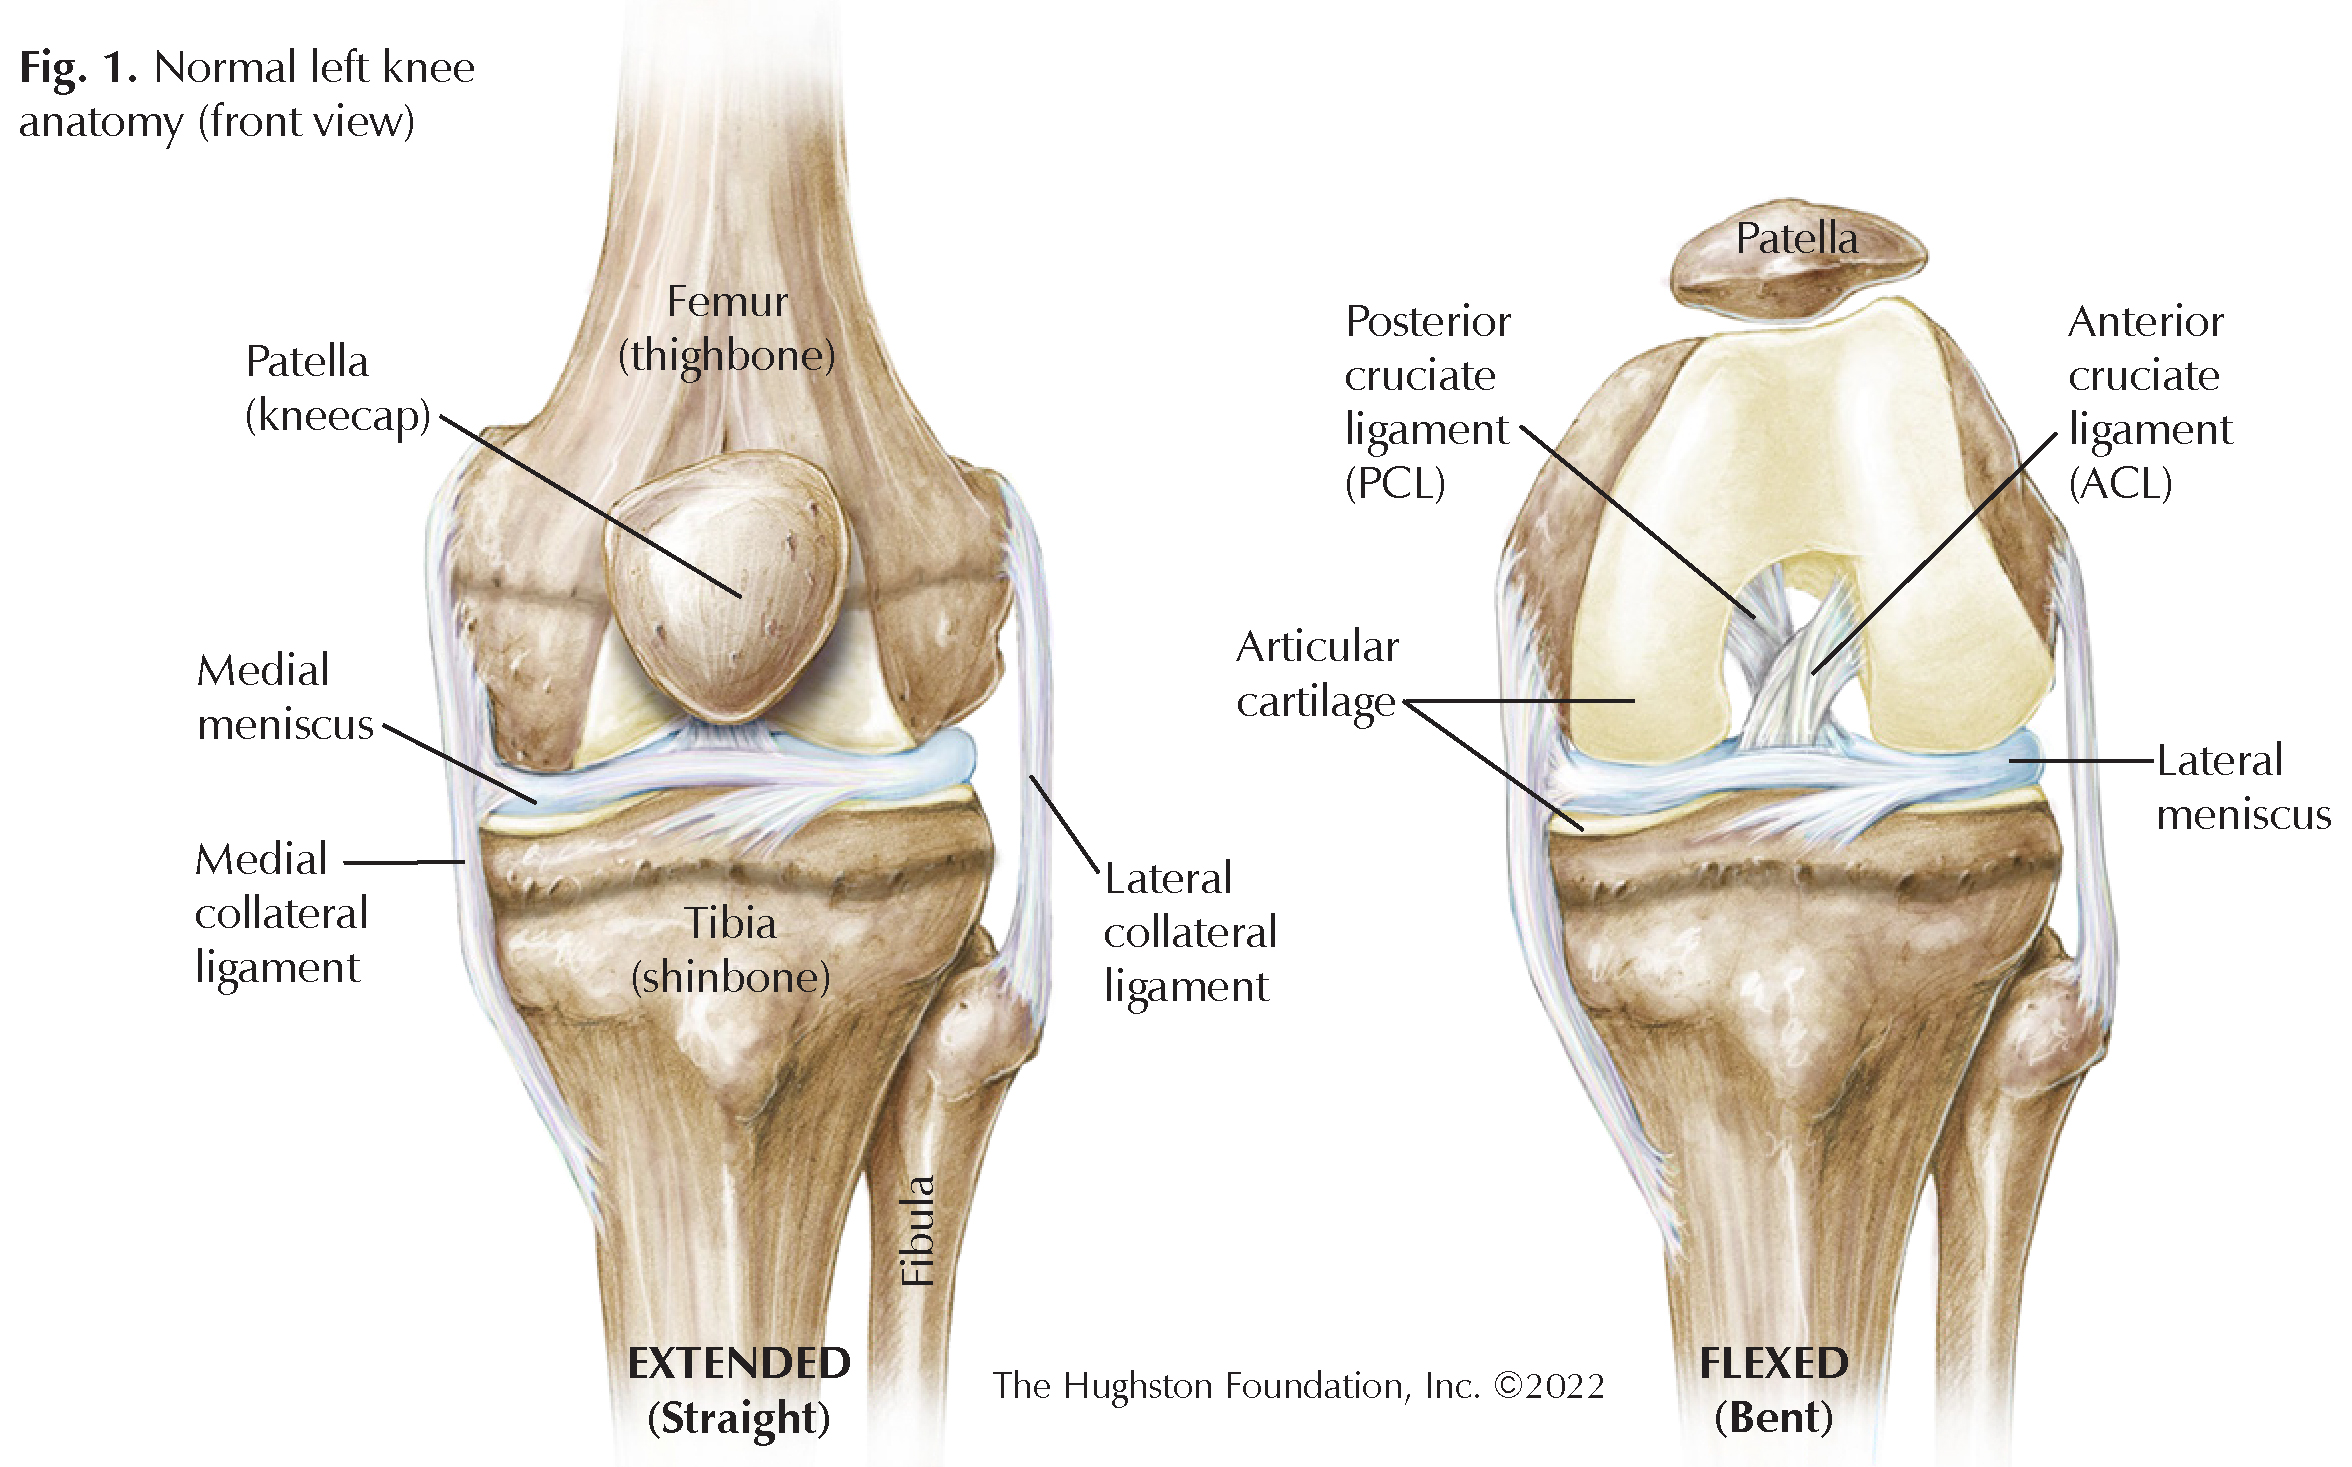 Normal left knee anatomy